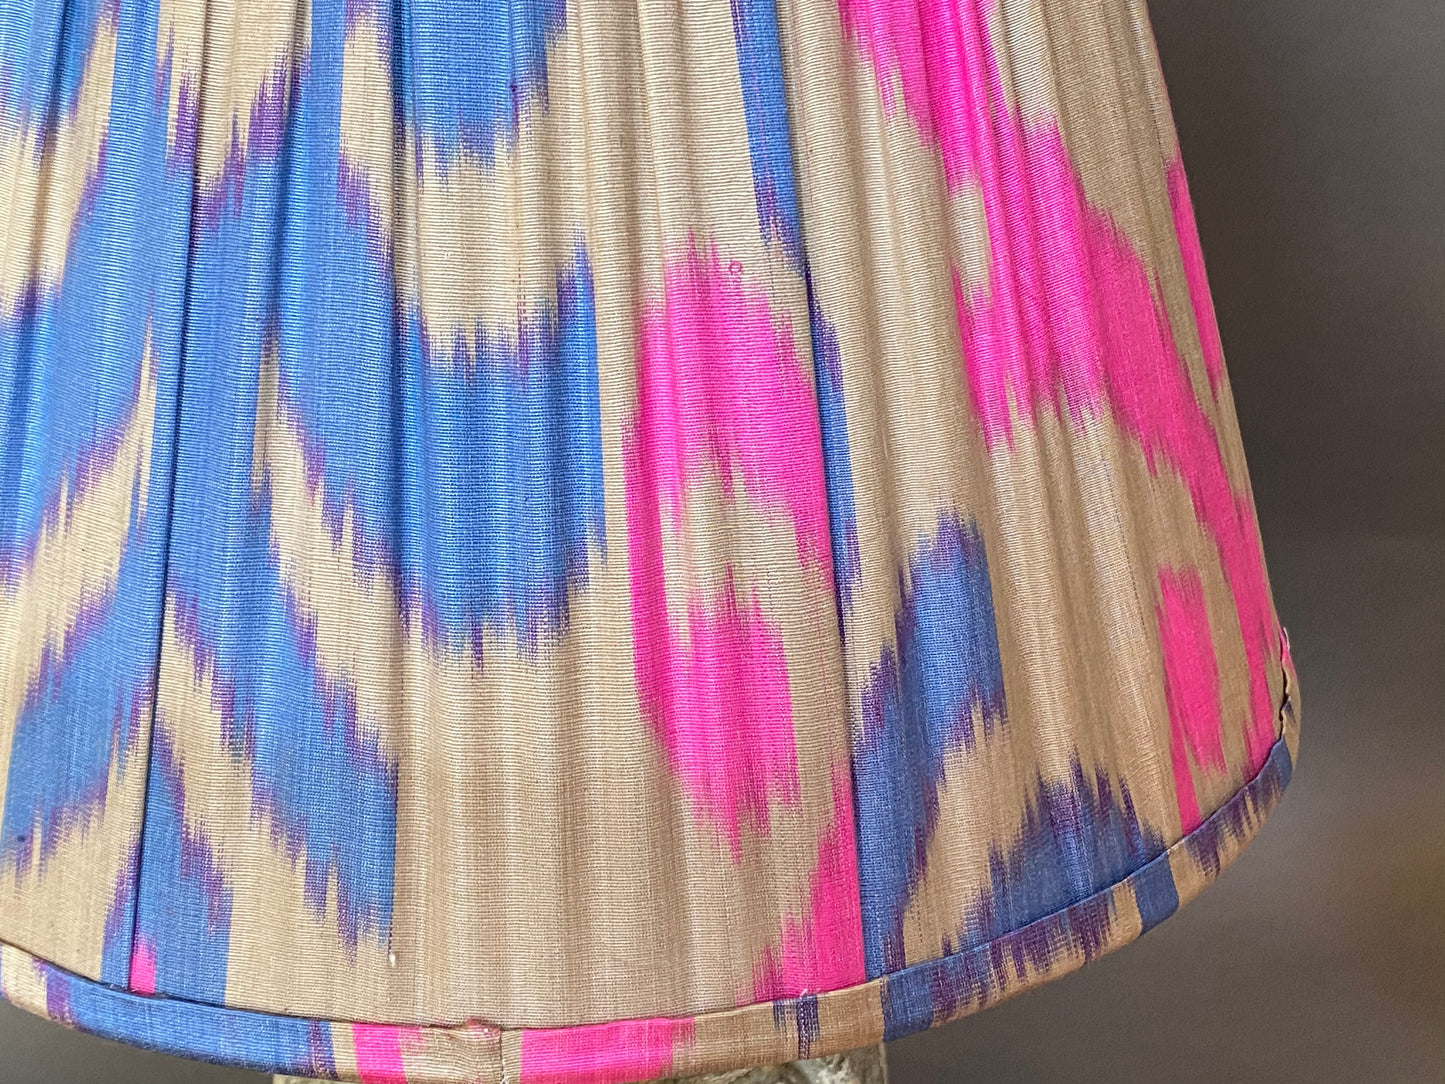 Bright pink and blue ikat silk lampshade close-up